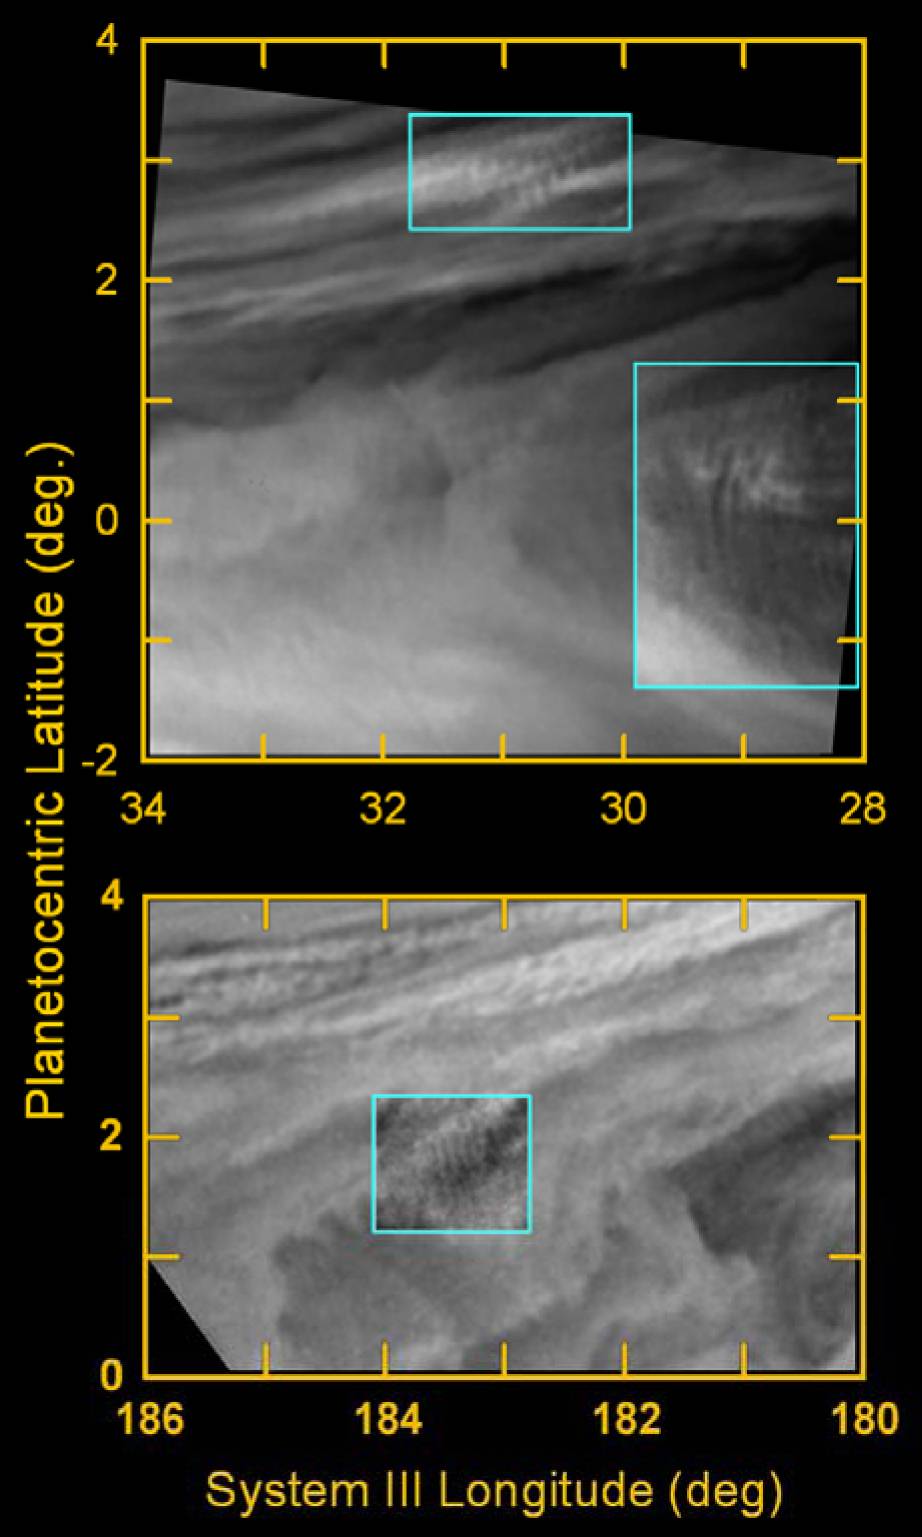 Encuentran ondas de gravedad en las imagenes de Júpiter de la misión Galileo